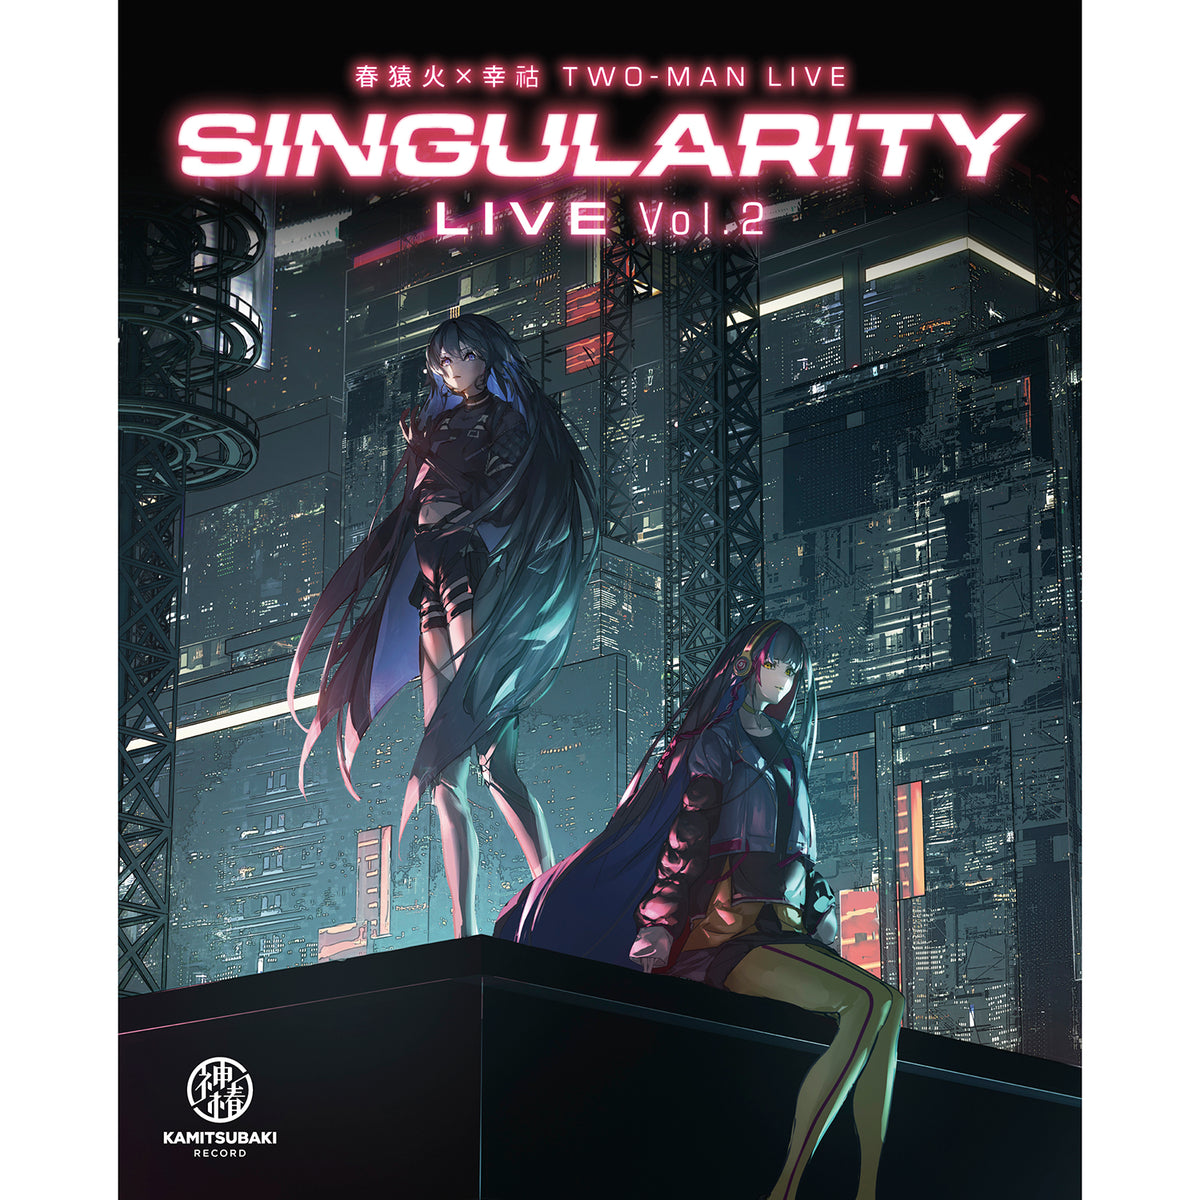 【春猿火×幸祜】TWO-MAN LIVE Blu-ray「Singularity Live Vol. 2」